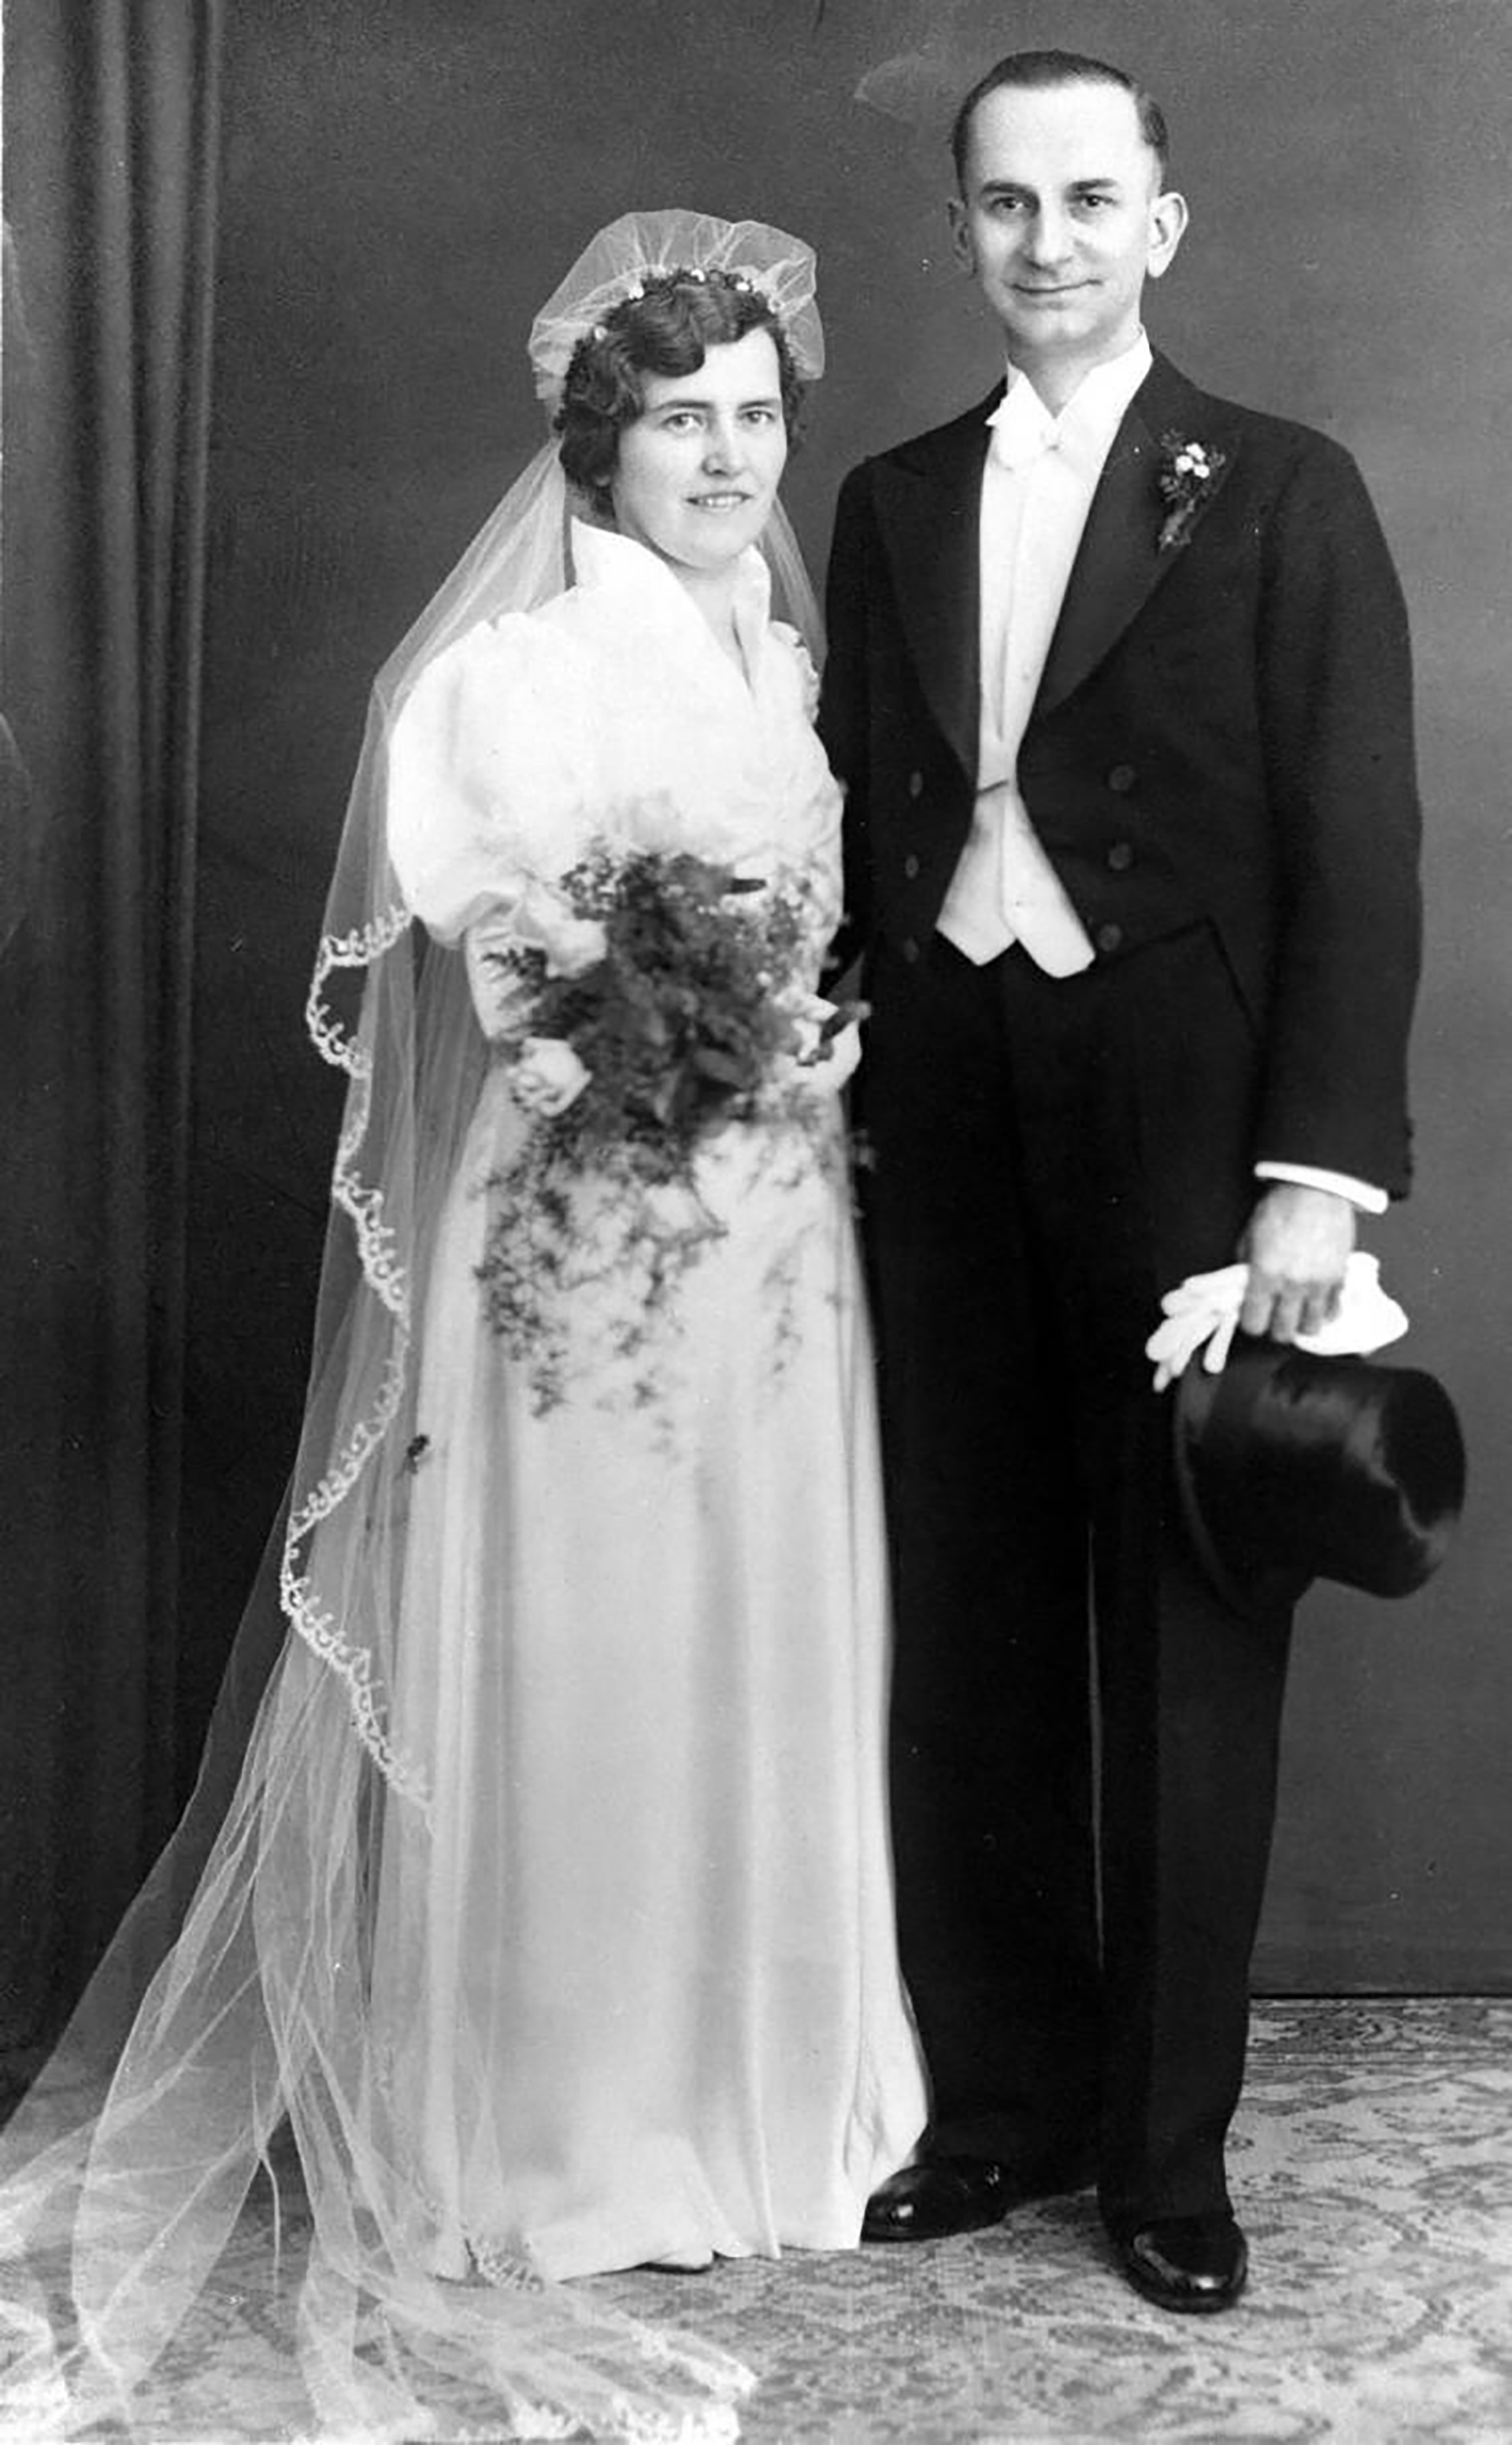 Elise y Otto se casaron en 1935. No tuvieron hijos. En 1940 empezaron a escribir y dejar por Berlín las postales con mensajes en contra de Hitler y su régimen